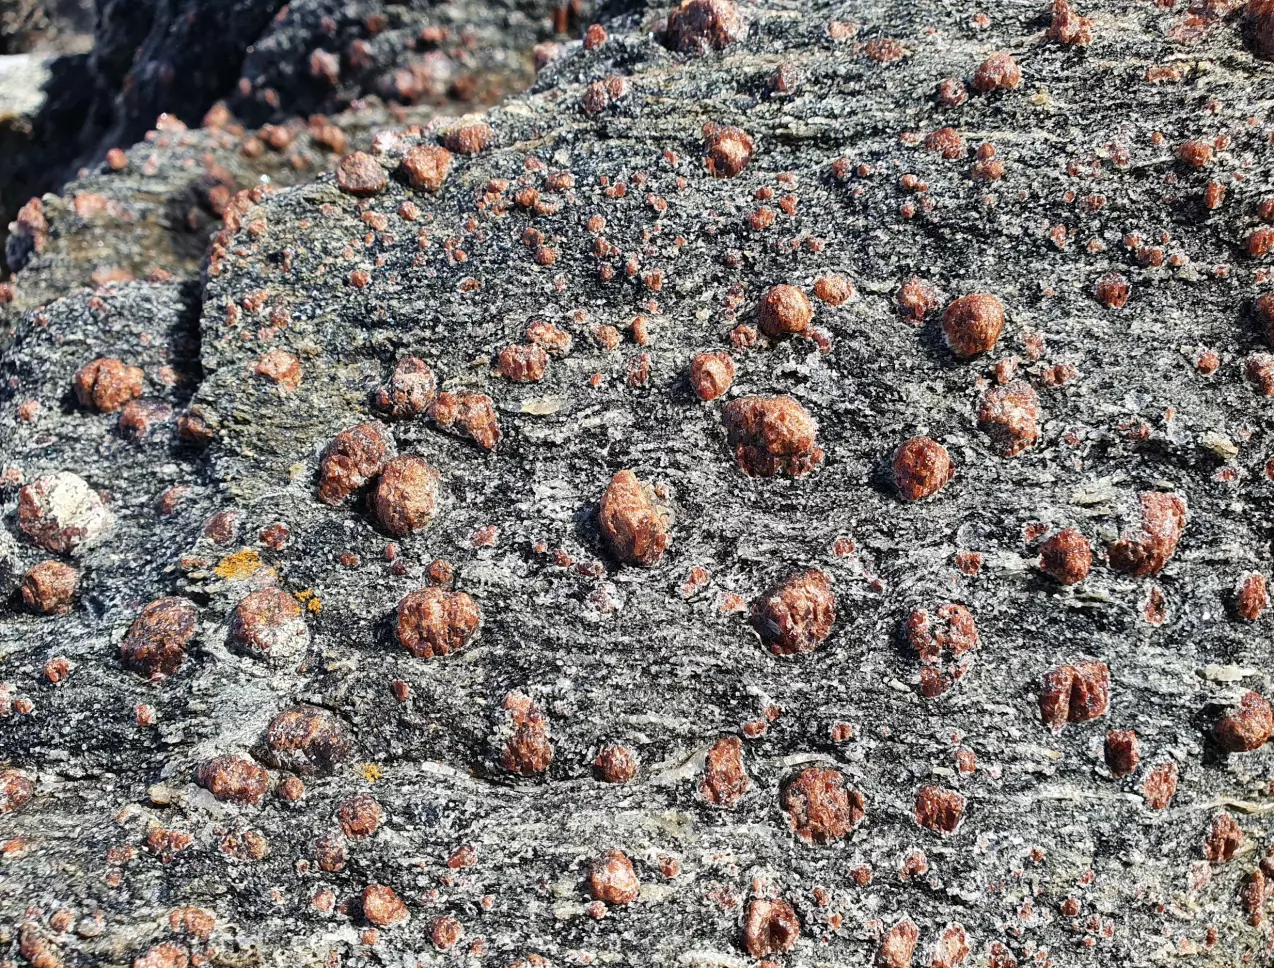 Blant de vanlige gneisene finner vi fascinerende mineraler og eksotiske bergarter - granat er ofte godt synlig i eklogitt.